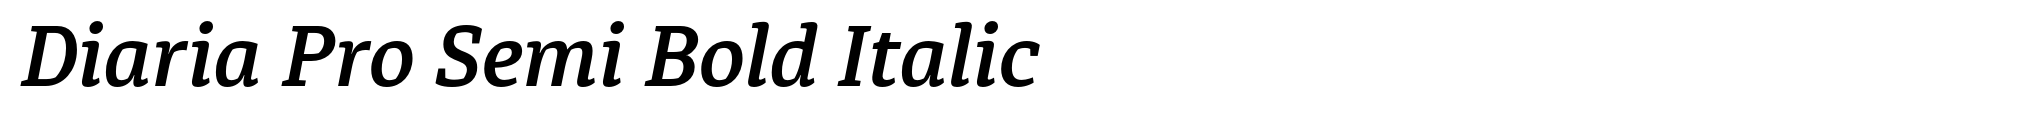 Diaria Pro Semi Bold Italic image